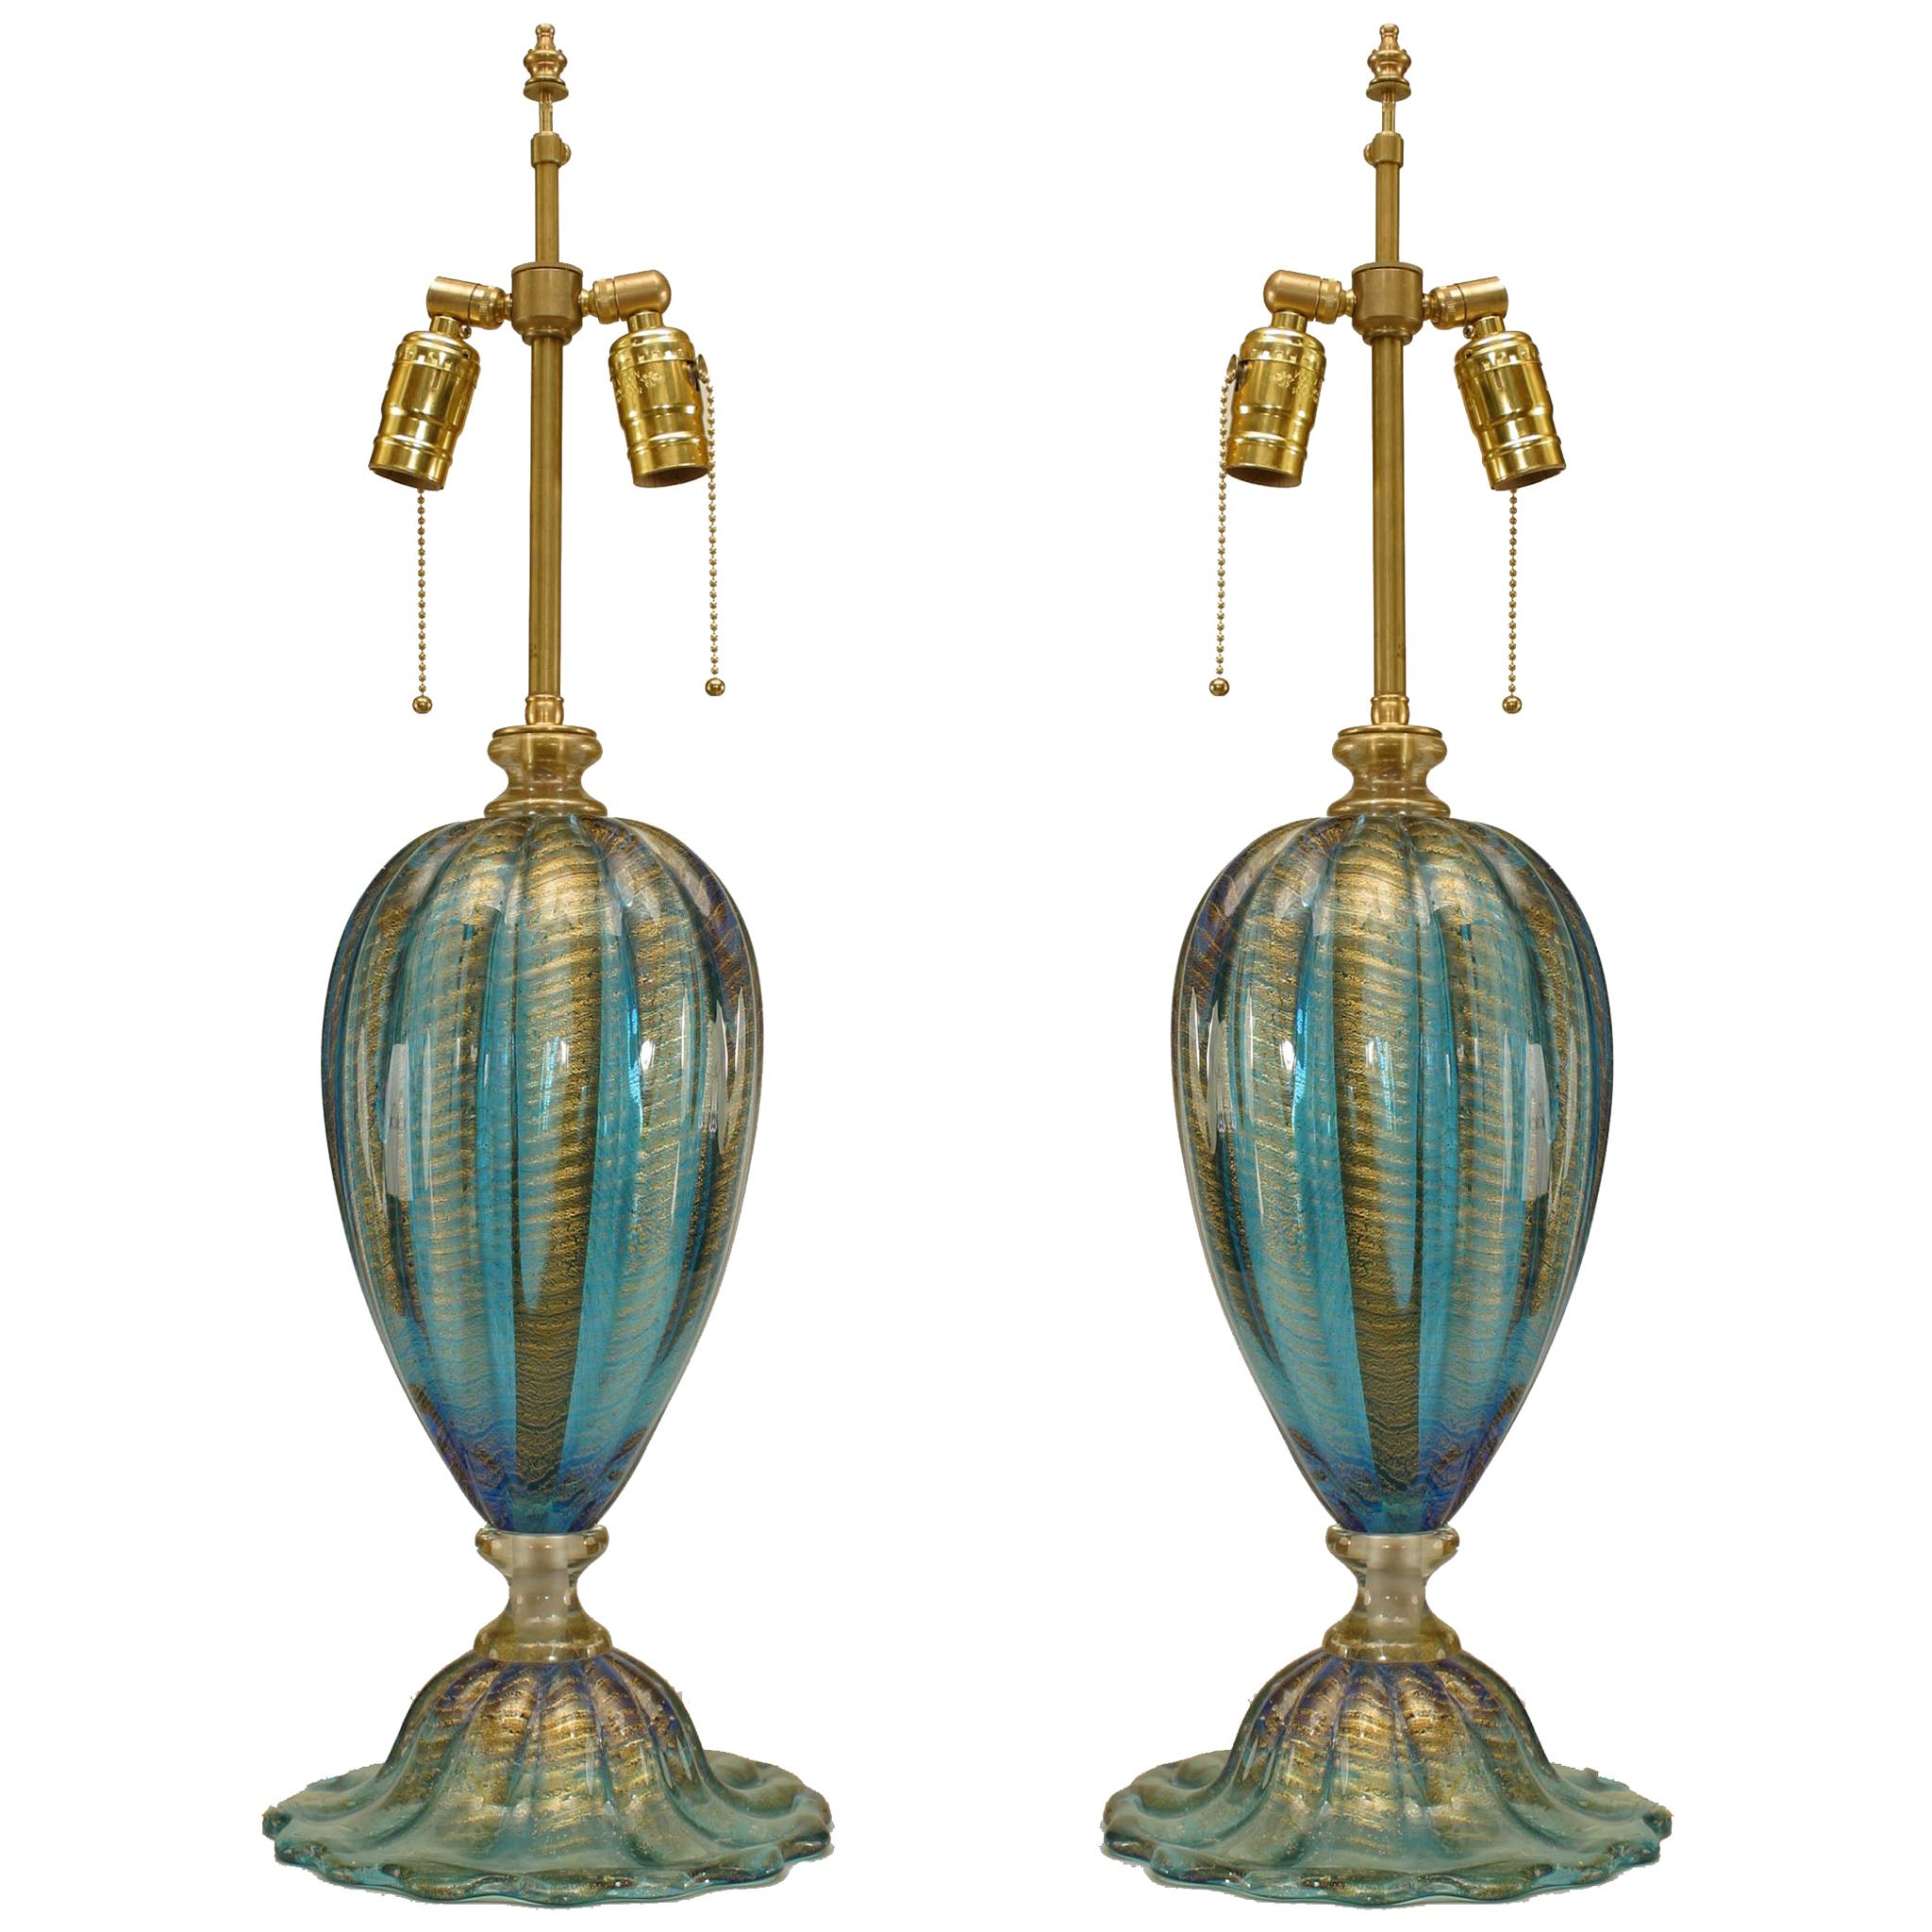 Pair of Italian Murano "FENICIO" Gold Dusted and Swirl Aqua Colored Glass Lamps